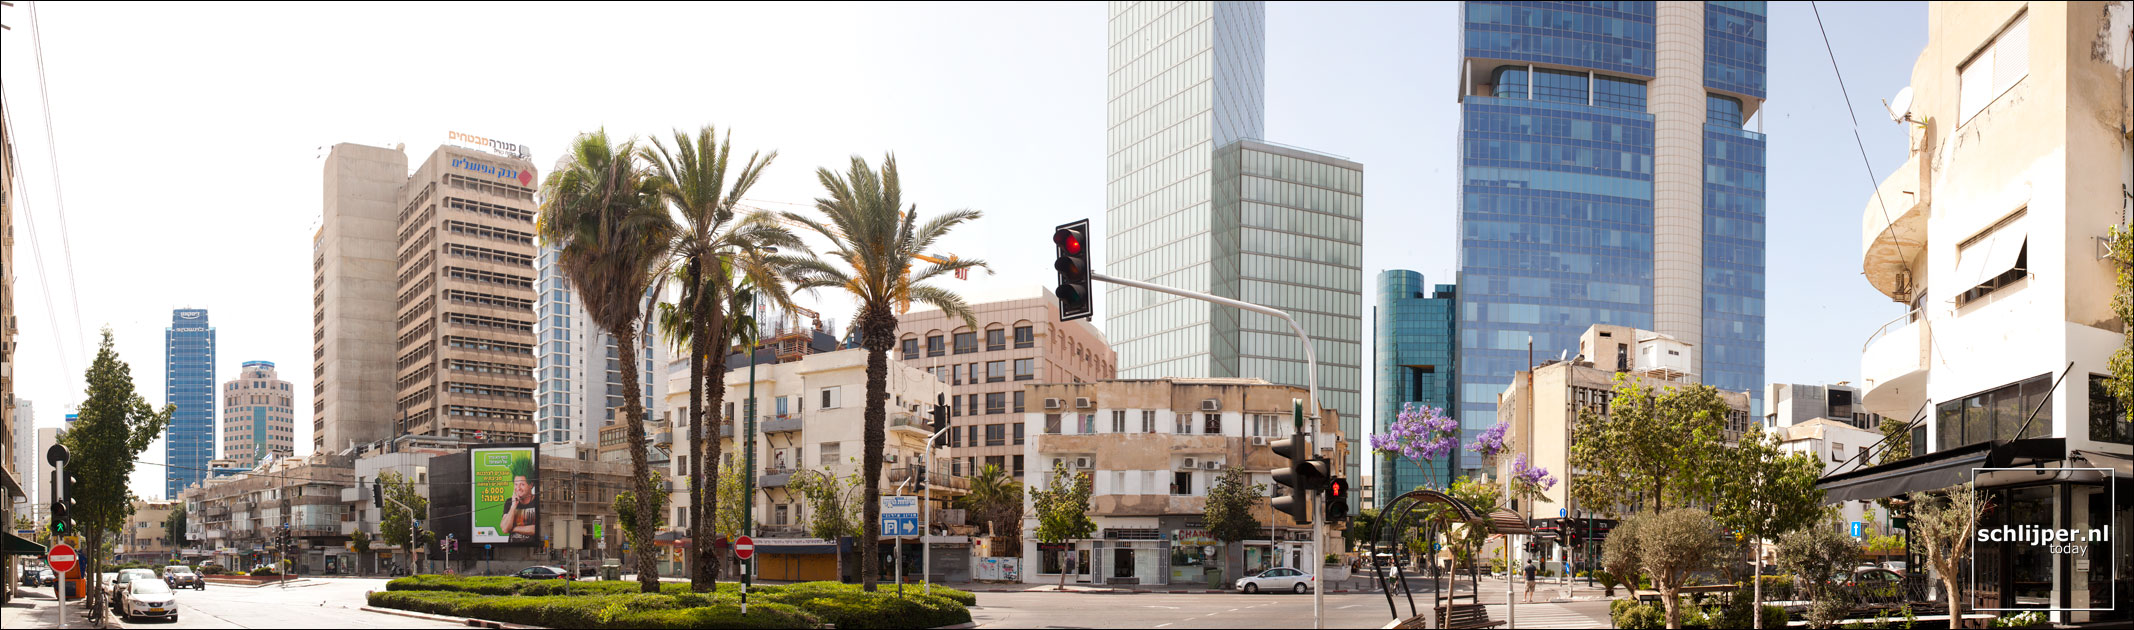 Israel, Tel Aviv, 26 mei 2012